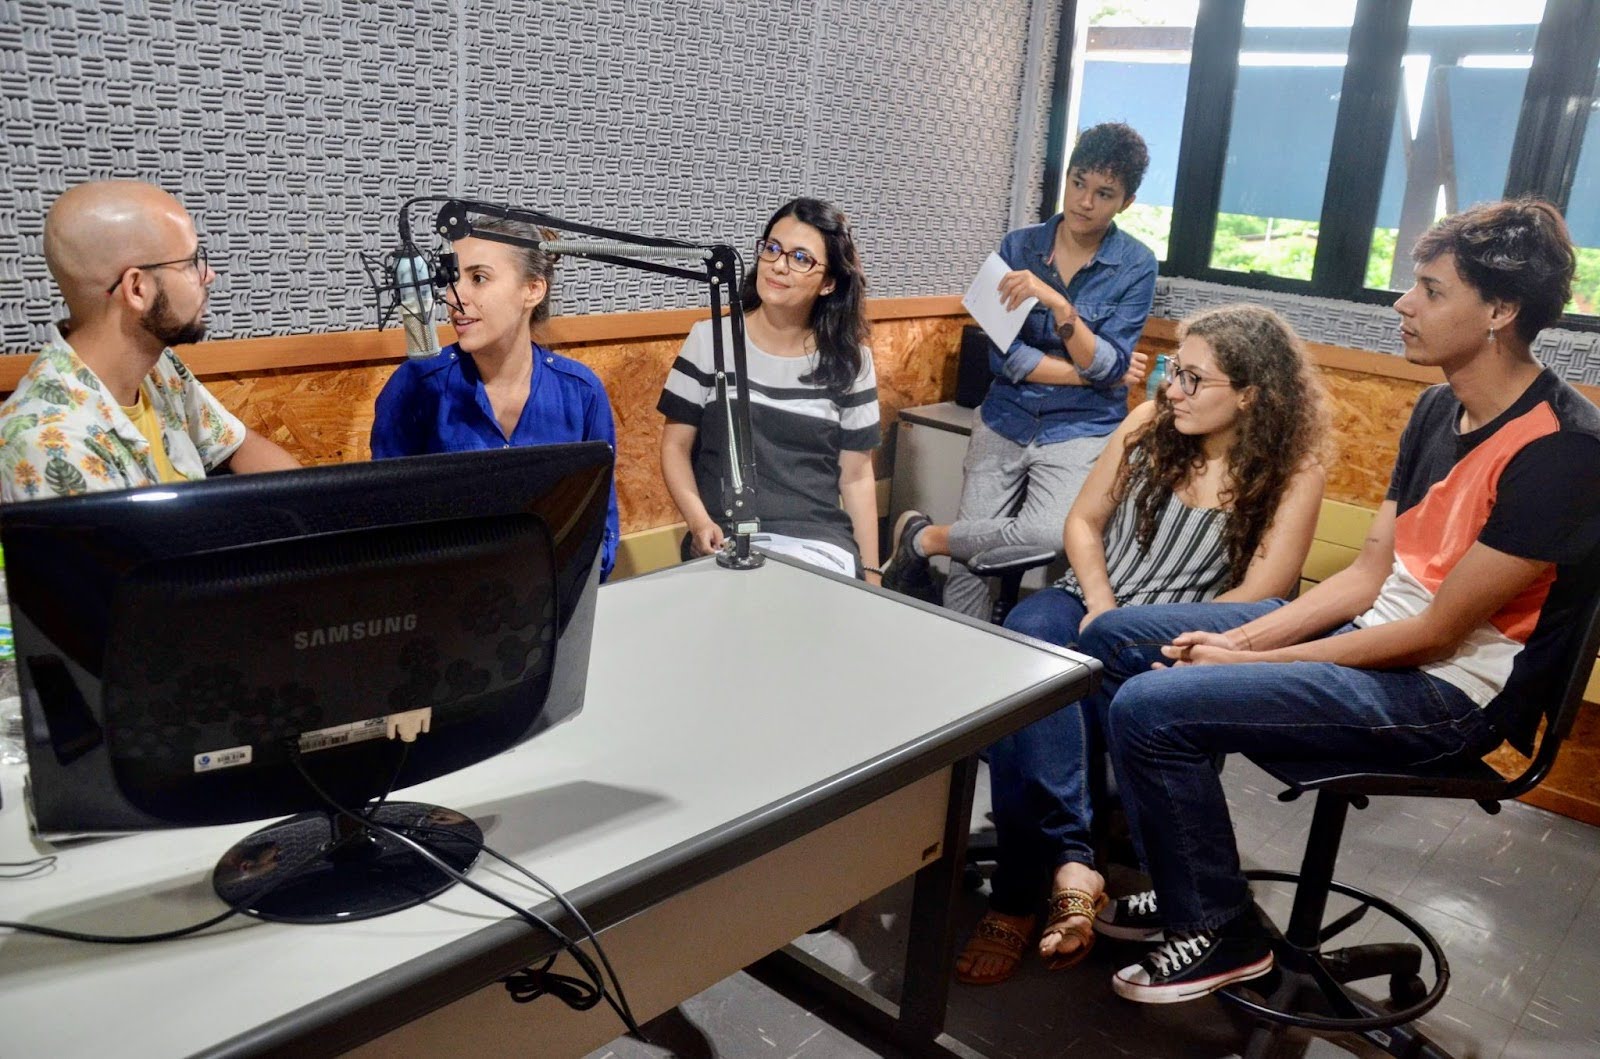 Thiago Zina Crepaldi, Taciana Santos, Diélen Borges, Josielle Ingrid, Anna Cauhy e Lucas Ribeiro durante a gravação do episódio piloto.